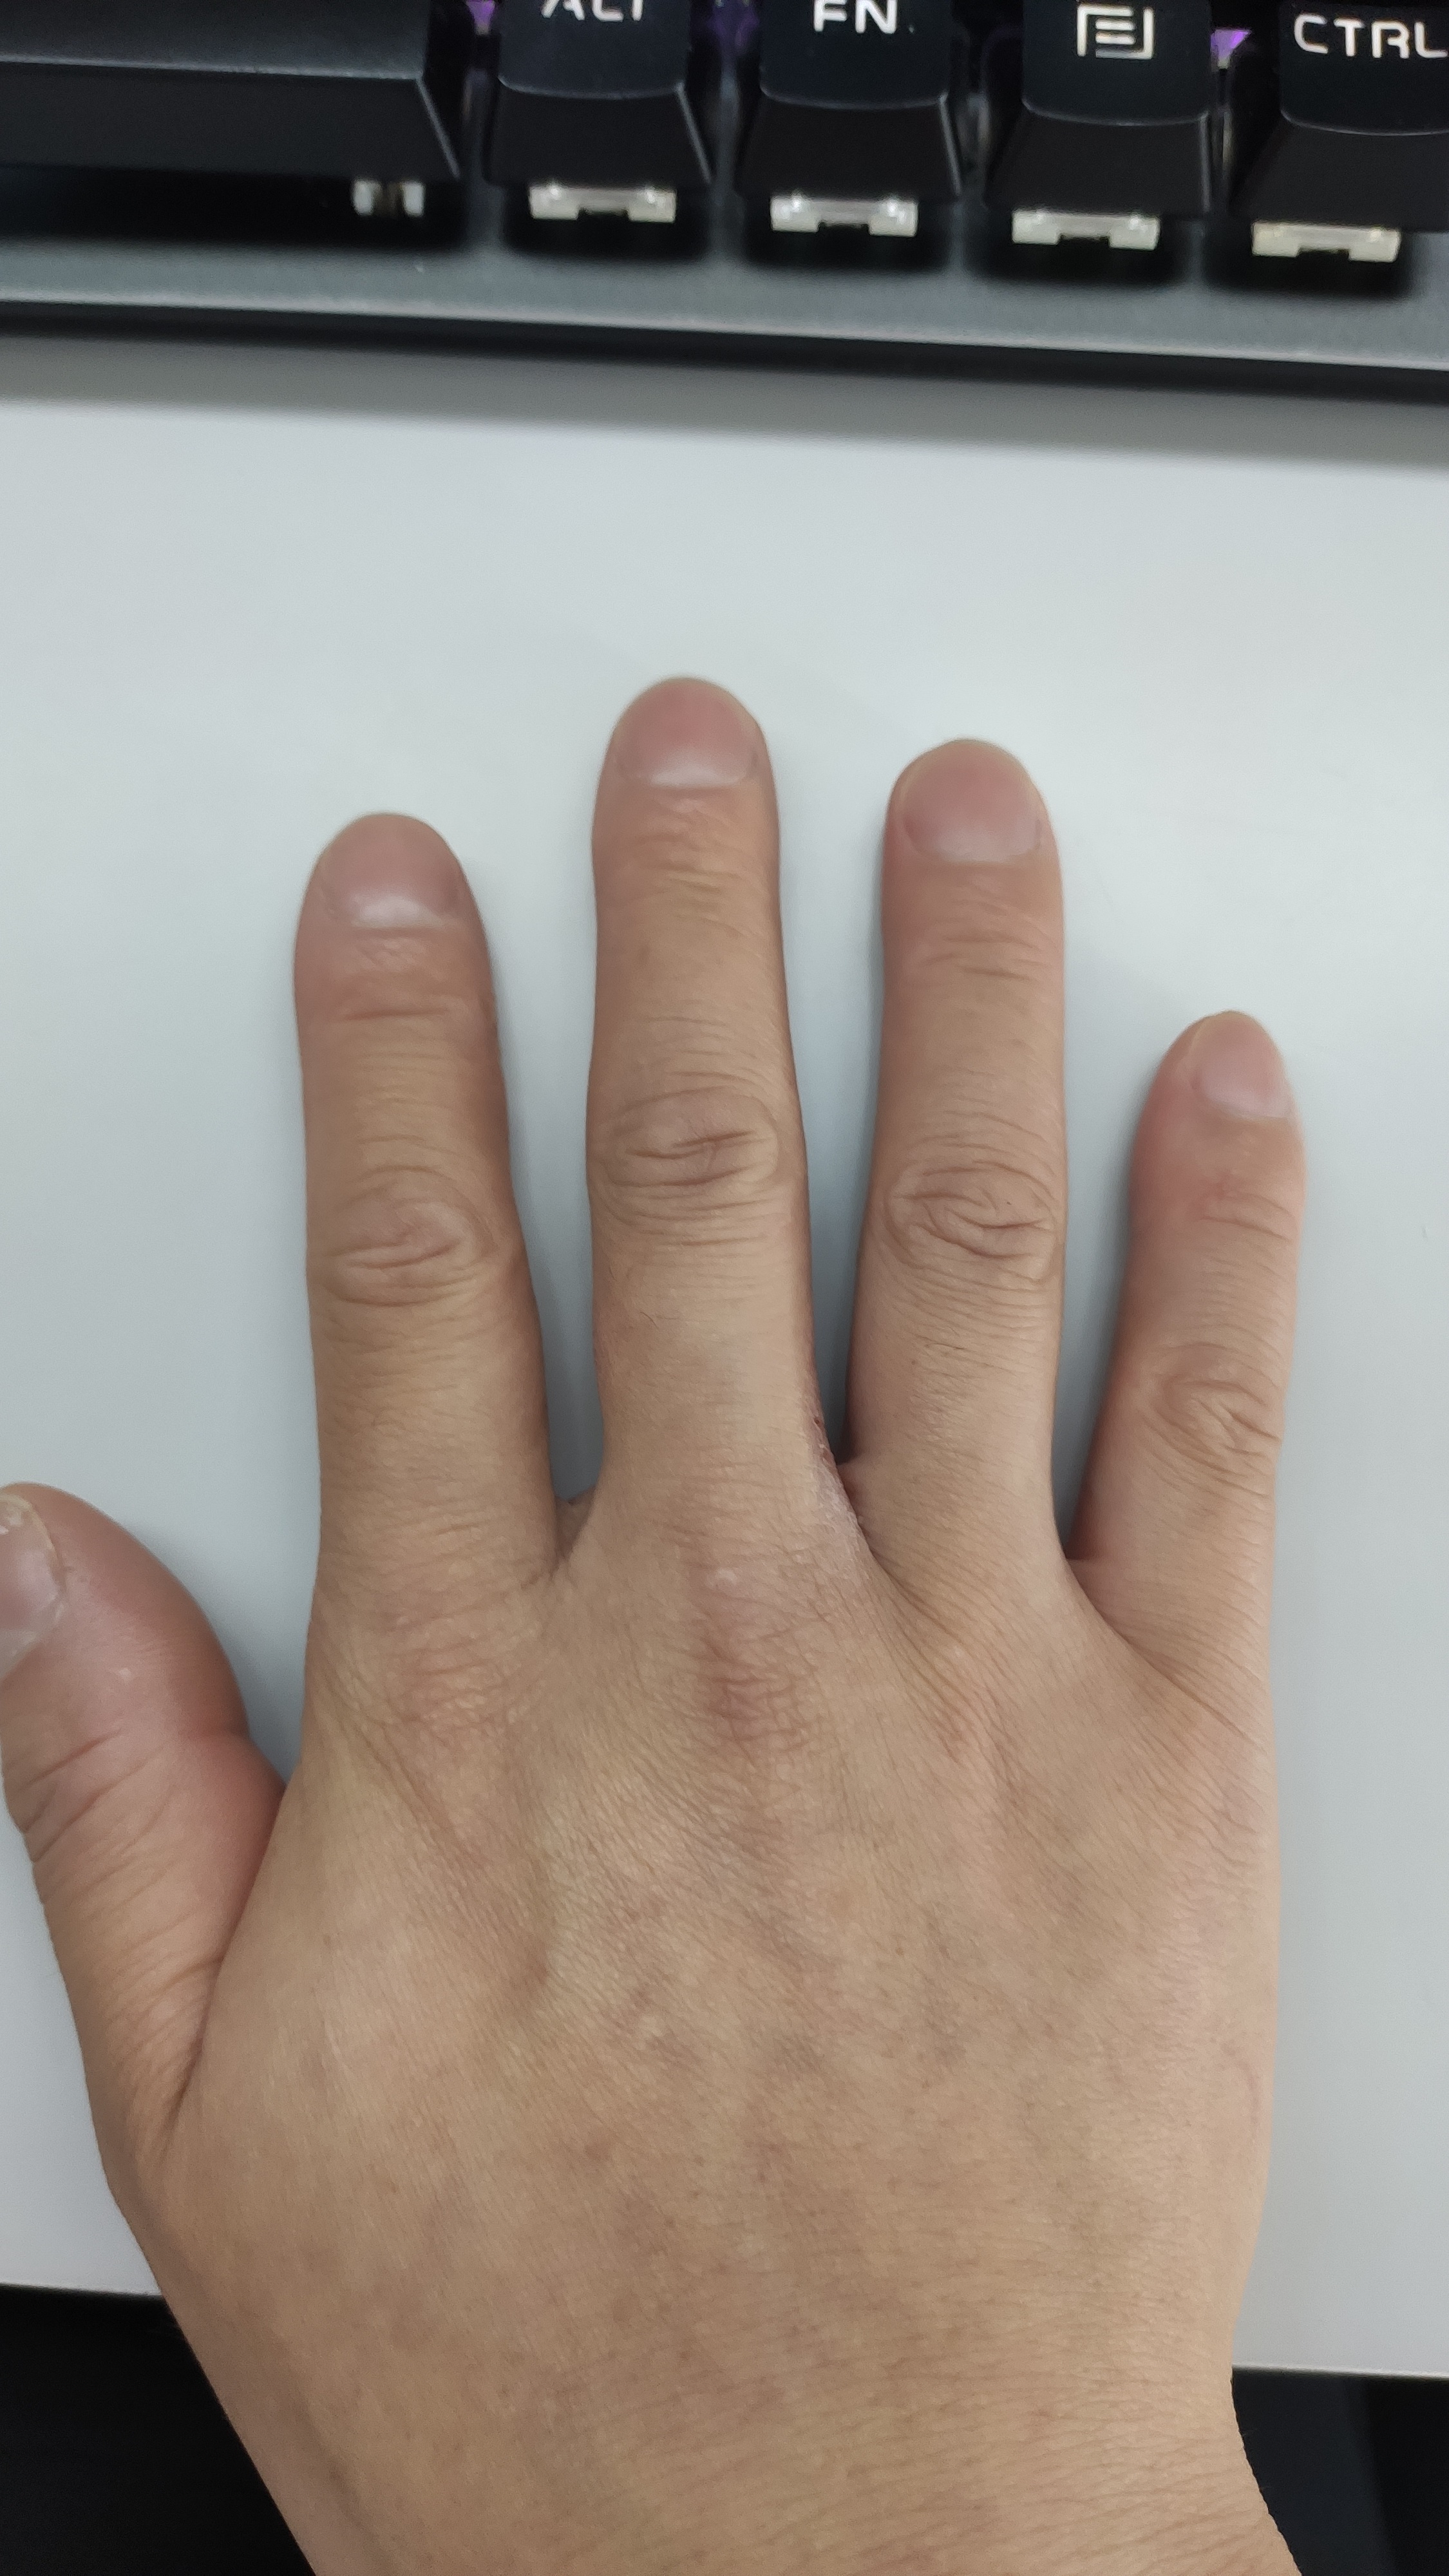 今天早上上班到公司同事说我的手指有点奇怪可能是杵状指说这种